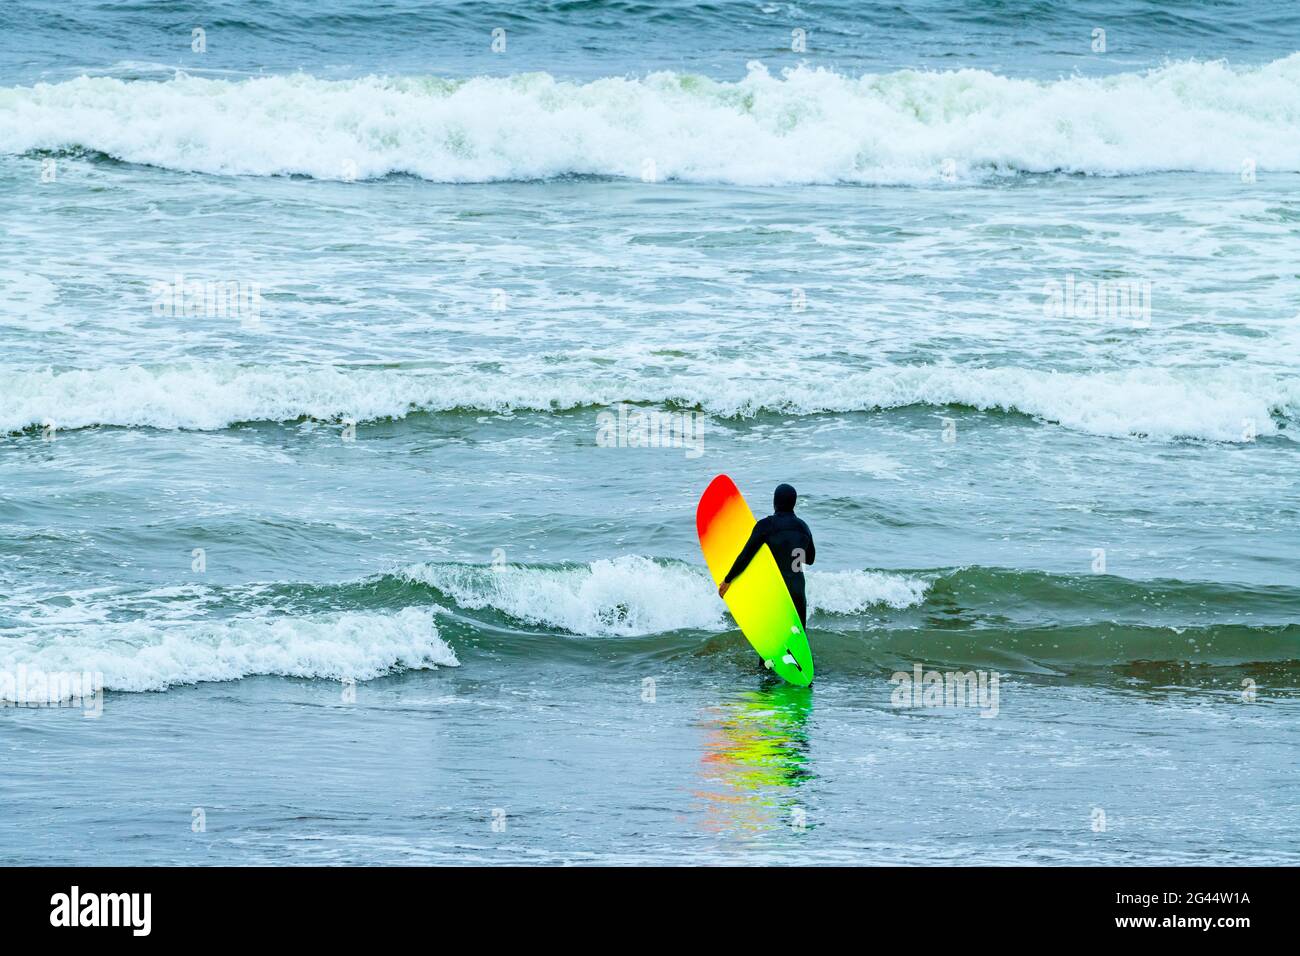 Surfeur avec planche de surf colorée dans l'océan Pacifique, Californie, États-Unis Banque D'Images